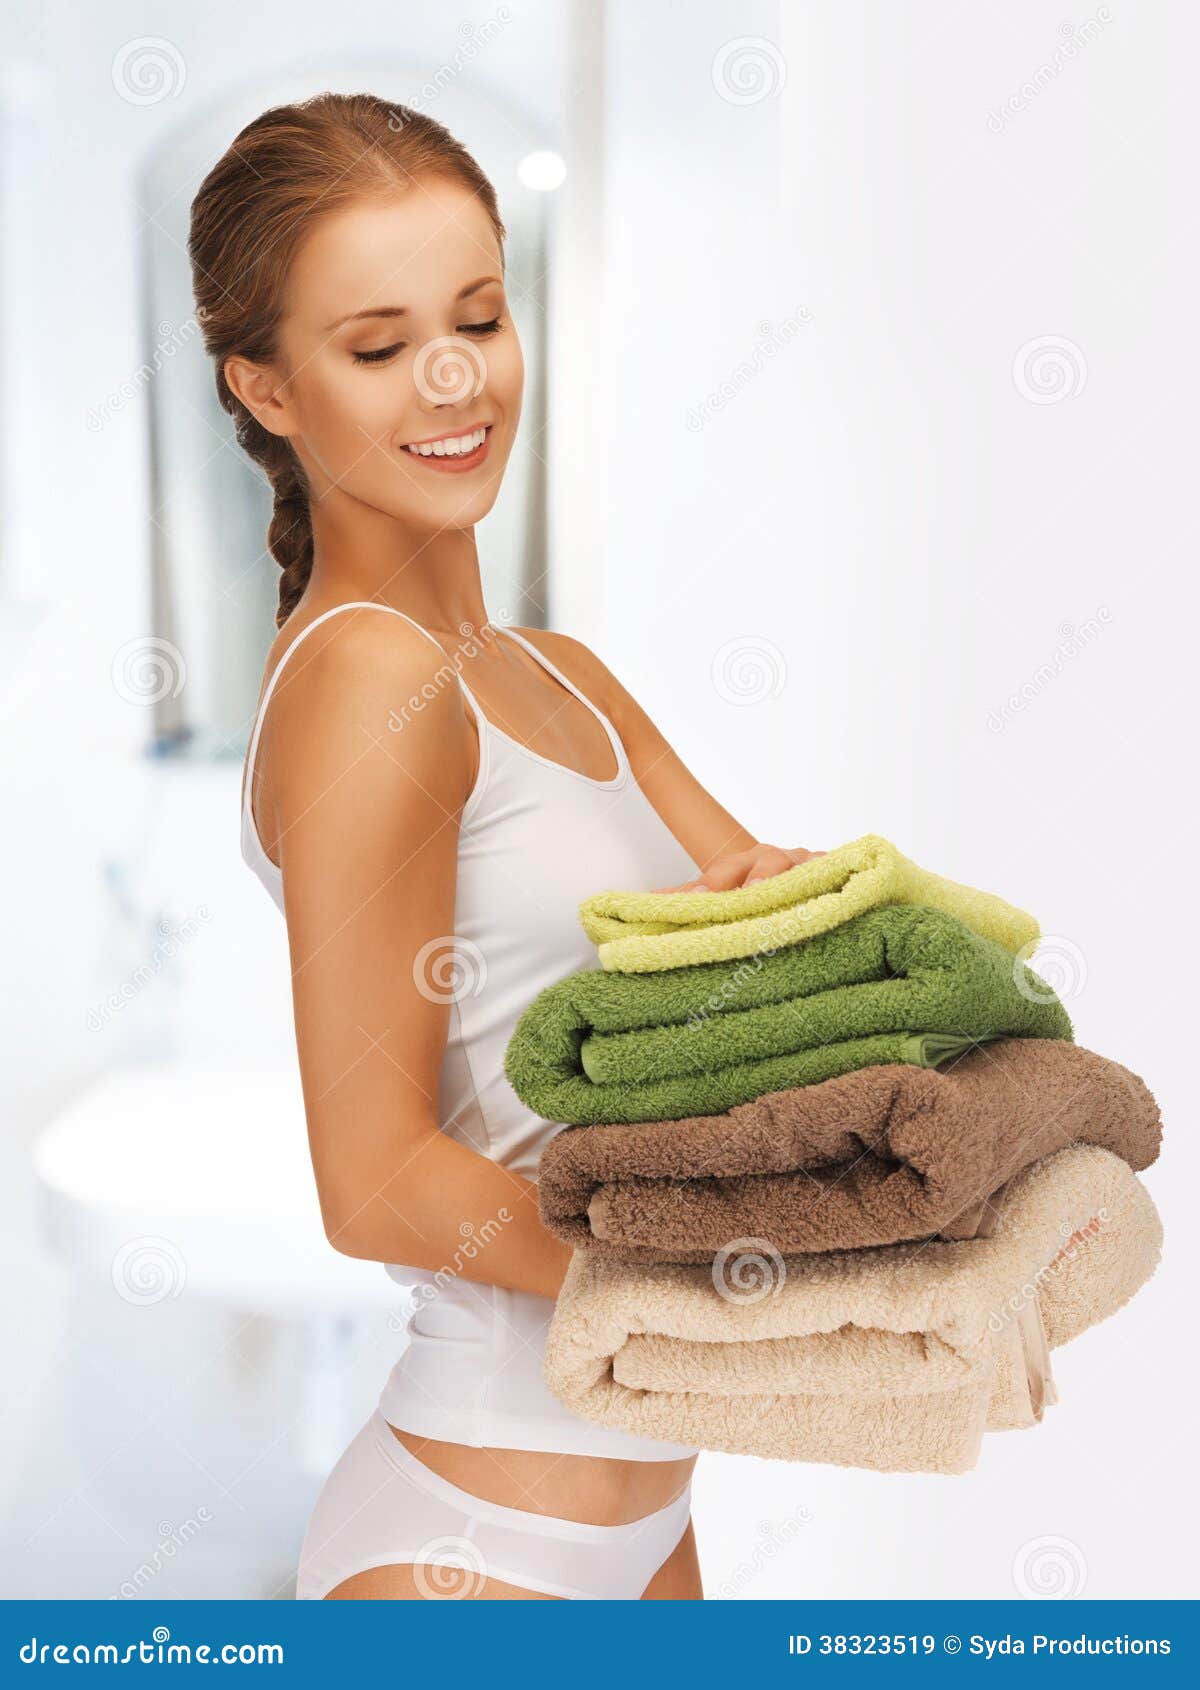 Ходит в полотенце. Девушка в полотенце. Девушка с полотенцем в руках. Девушка держит в руках полотенце. Женщина со стопкой полотенец.